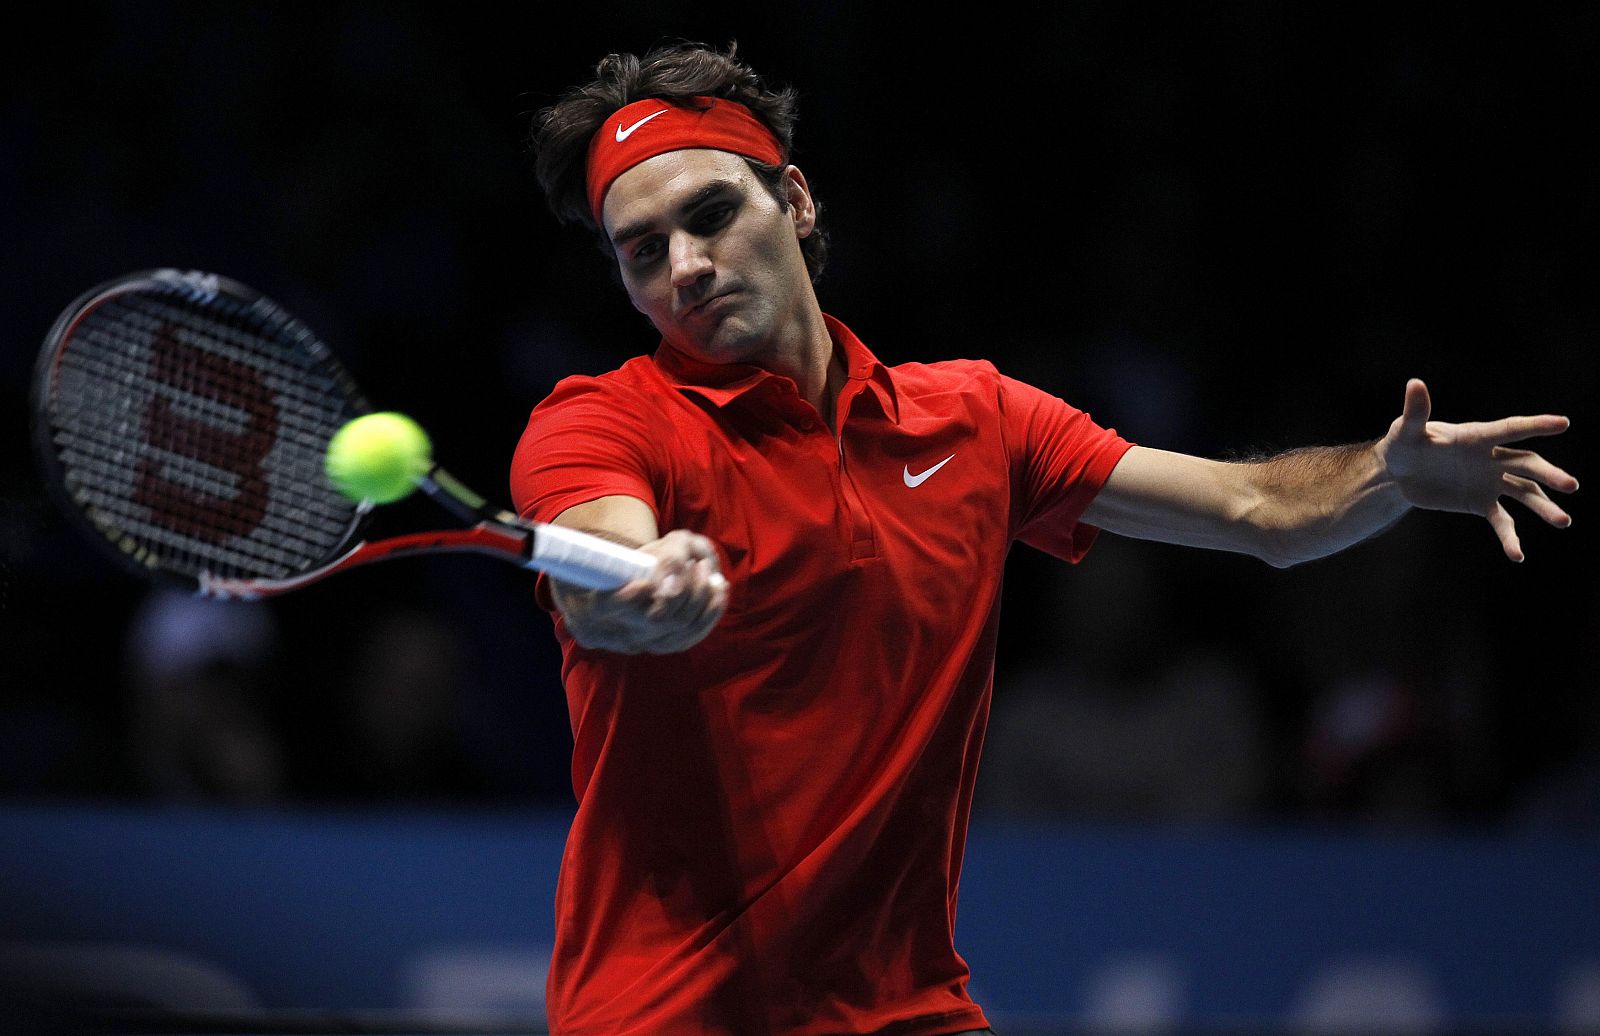 El suizo Roger Federer en uno de sus golpeos ganadores ante Djokovic para meterse en la final de la Copa de Maestros.